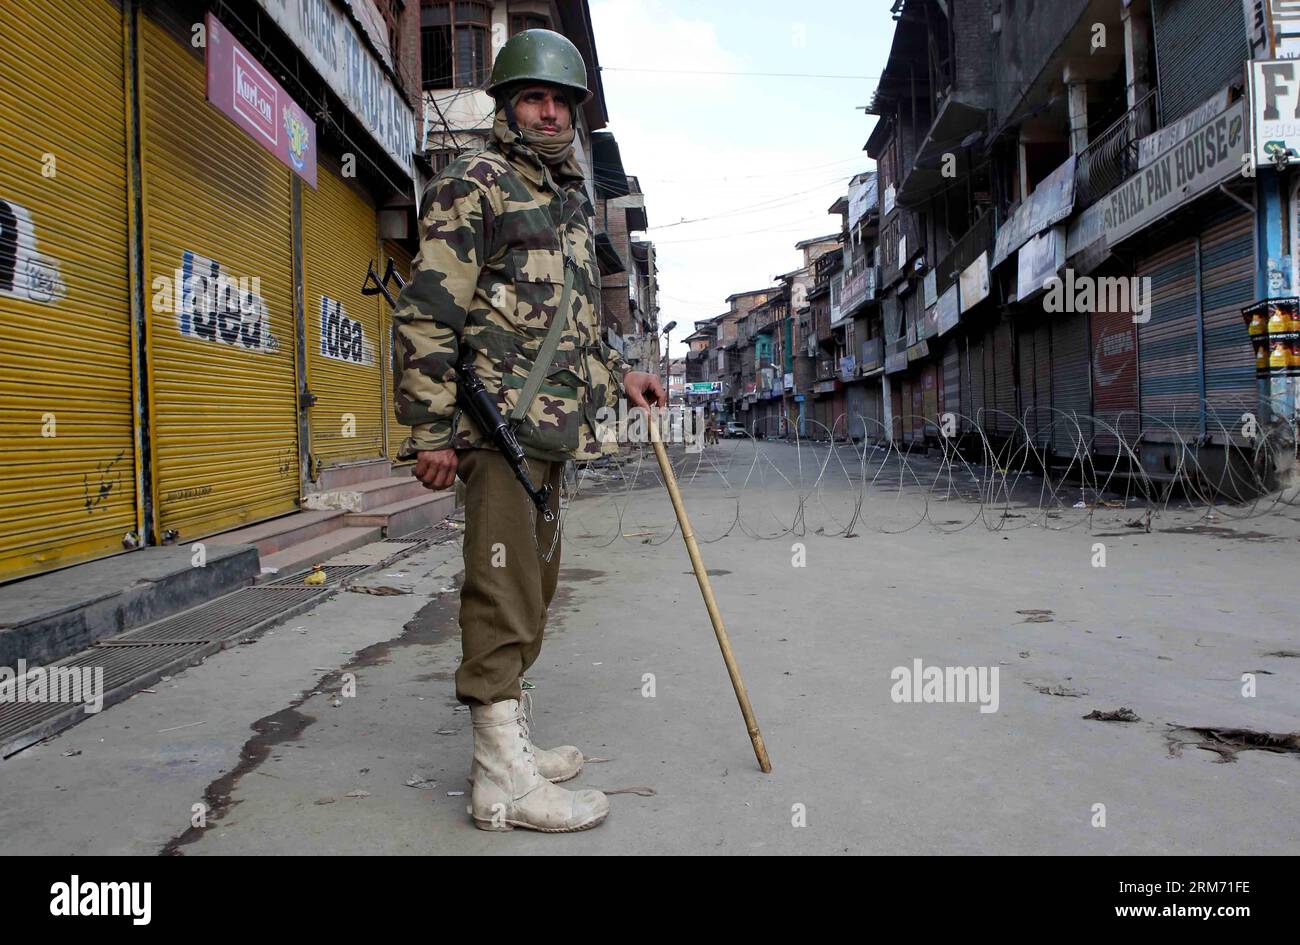 (140209) -- SRINAGAR, 9 febbraio 2014 (Xinhua) -- un gruppo paramilitare indiano si trova a guardia in un mercato chiuso durante le restrizioni a Srinagar, la capitale estiva del Kashmir controllato dagli indiani, 9 febbraio 2014. Le autorità domenica hanno imposto restrizioni nelle aree dominate dai musulmani del Kashmir controllato dagli indiani per prevenire proteste e scontri nel primo anniversario dell'esecuzione di Mohammed Afzal Guru condannato per attacco al parlamento indiano, hanno detto i funzionari. (Xinhua/Javed Dar) KASHMIR-SRINAGAR-PROTEST PUBLICATIONxNOTxINxCHN Srinagar 9 febbraio 2014 XINHUA a Indian paramilitare Trooper sta di guardia in una M chiusa Foto Stock